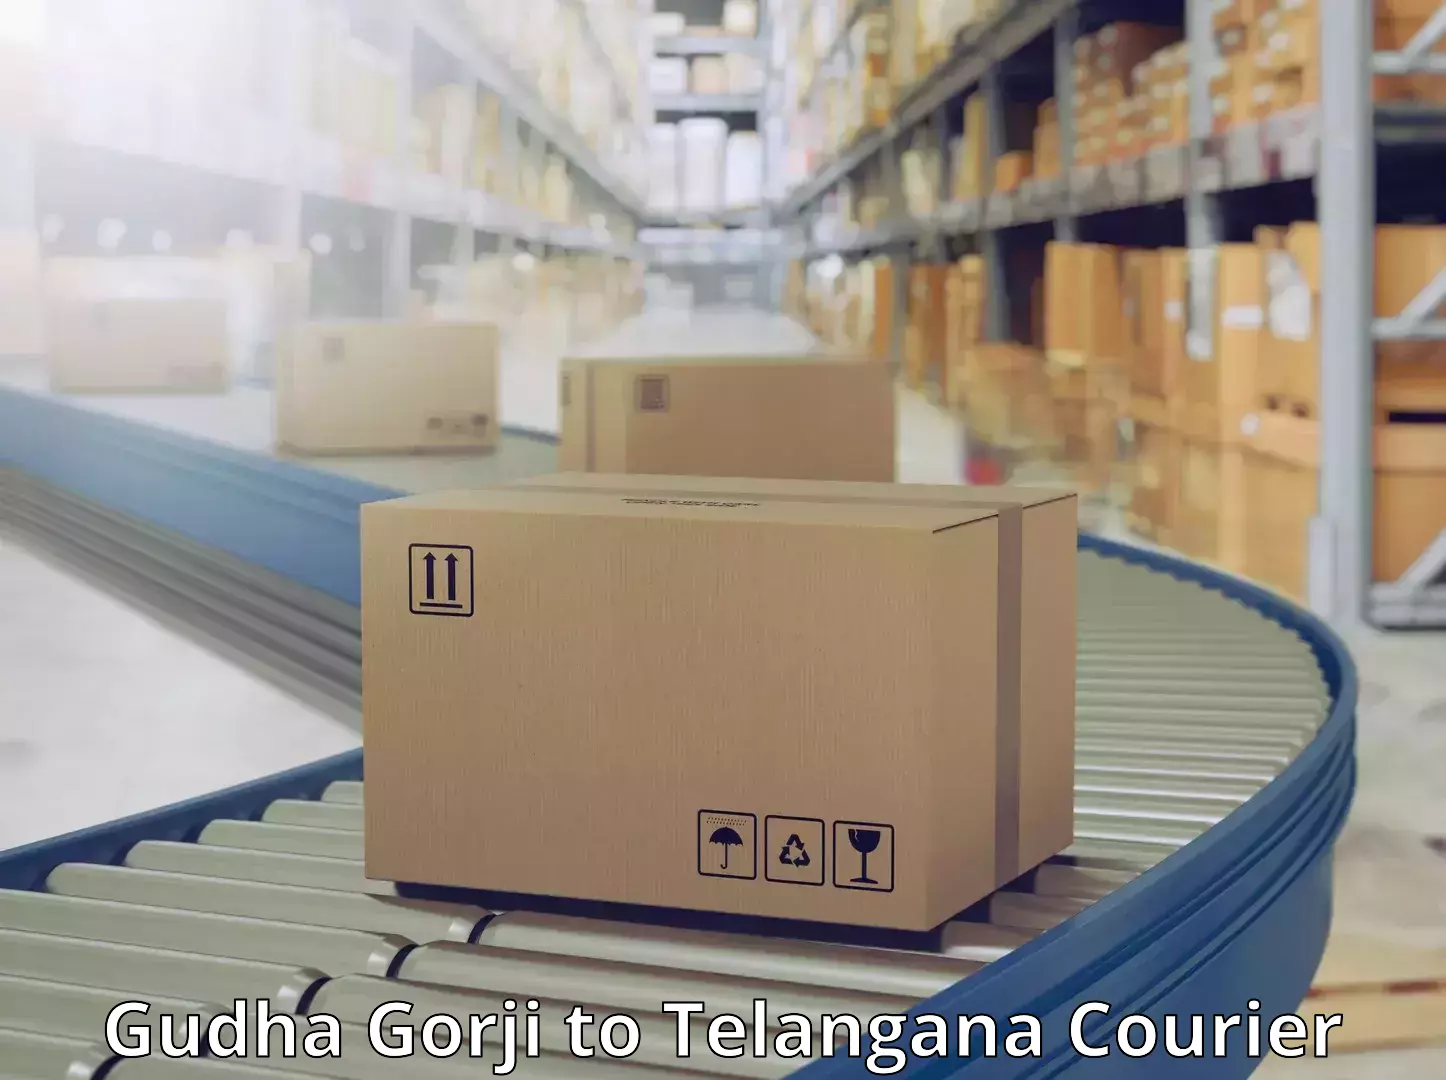 Urgent courier needs Gudha Gorji to Manneguda